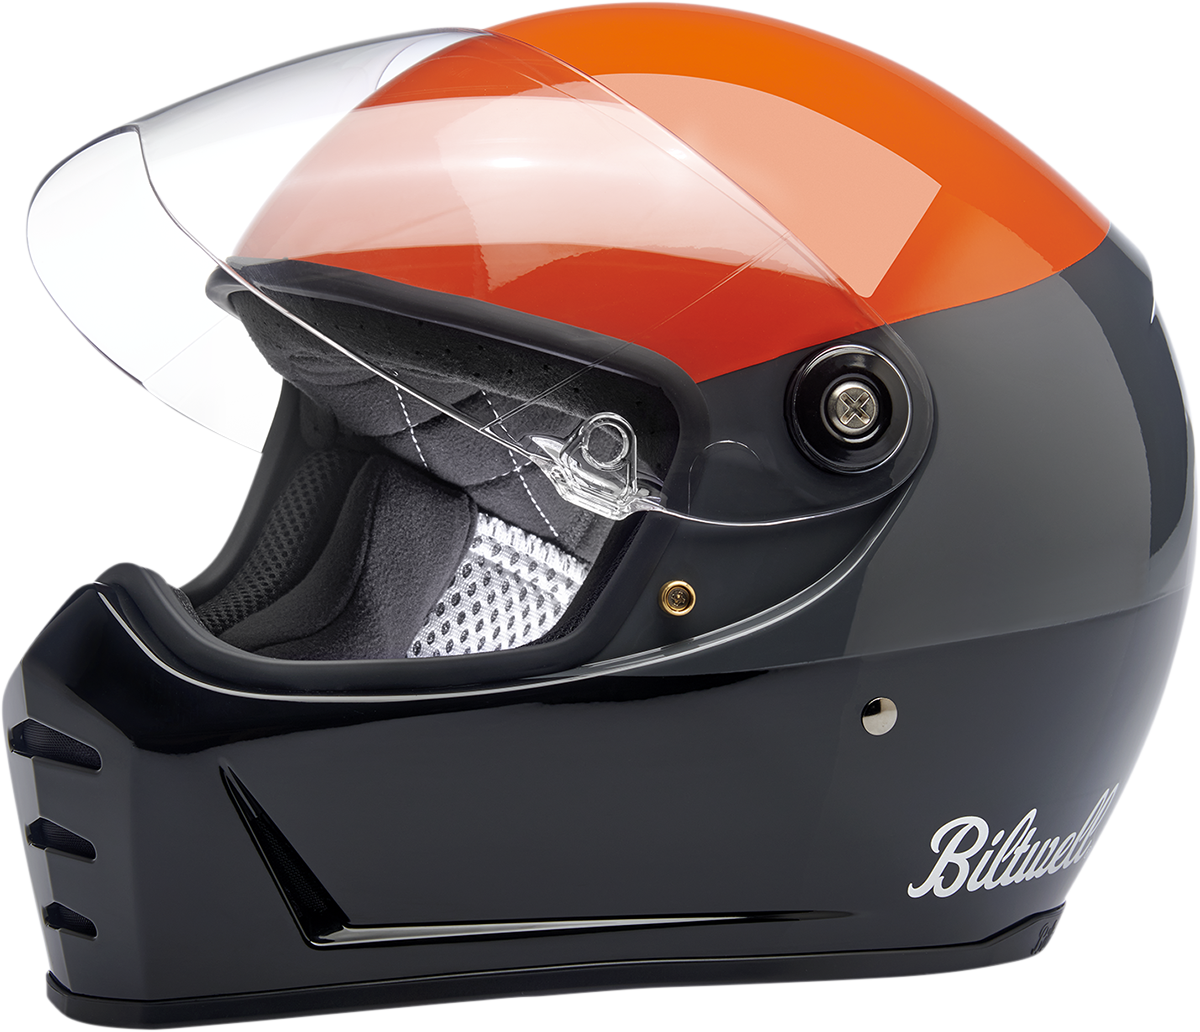 BILTWELL Lane Splitter ECE Helmet - Gloss Podium Orange/Gray/Black